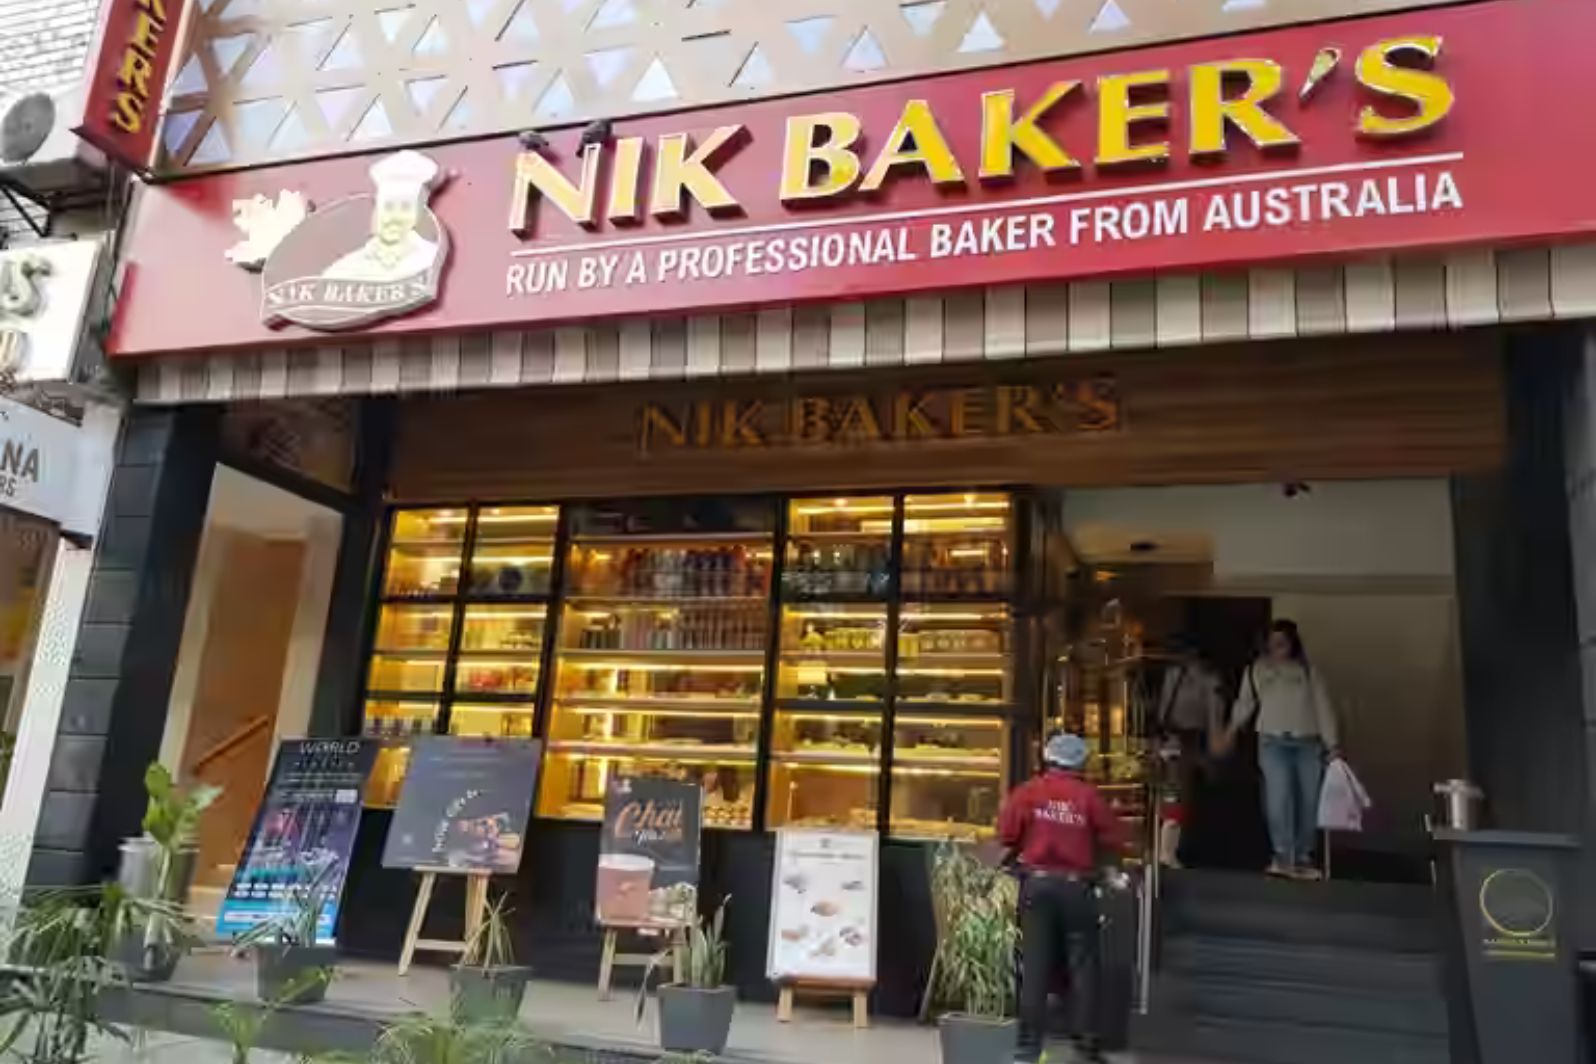 nik baker's sector 35 chandigarh